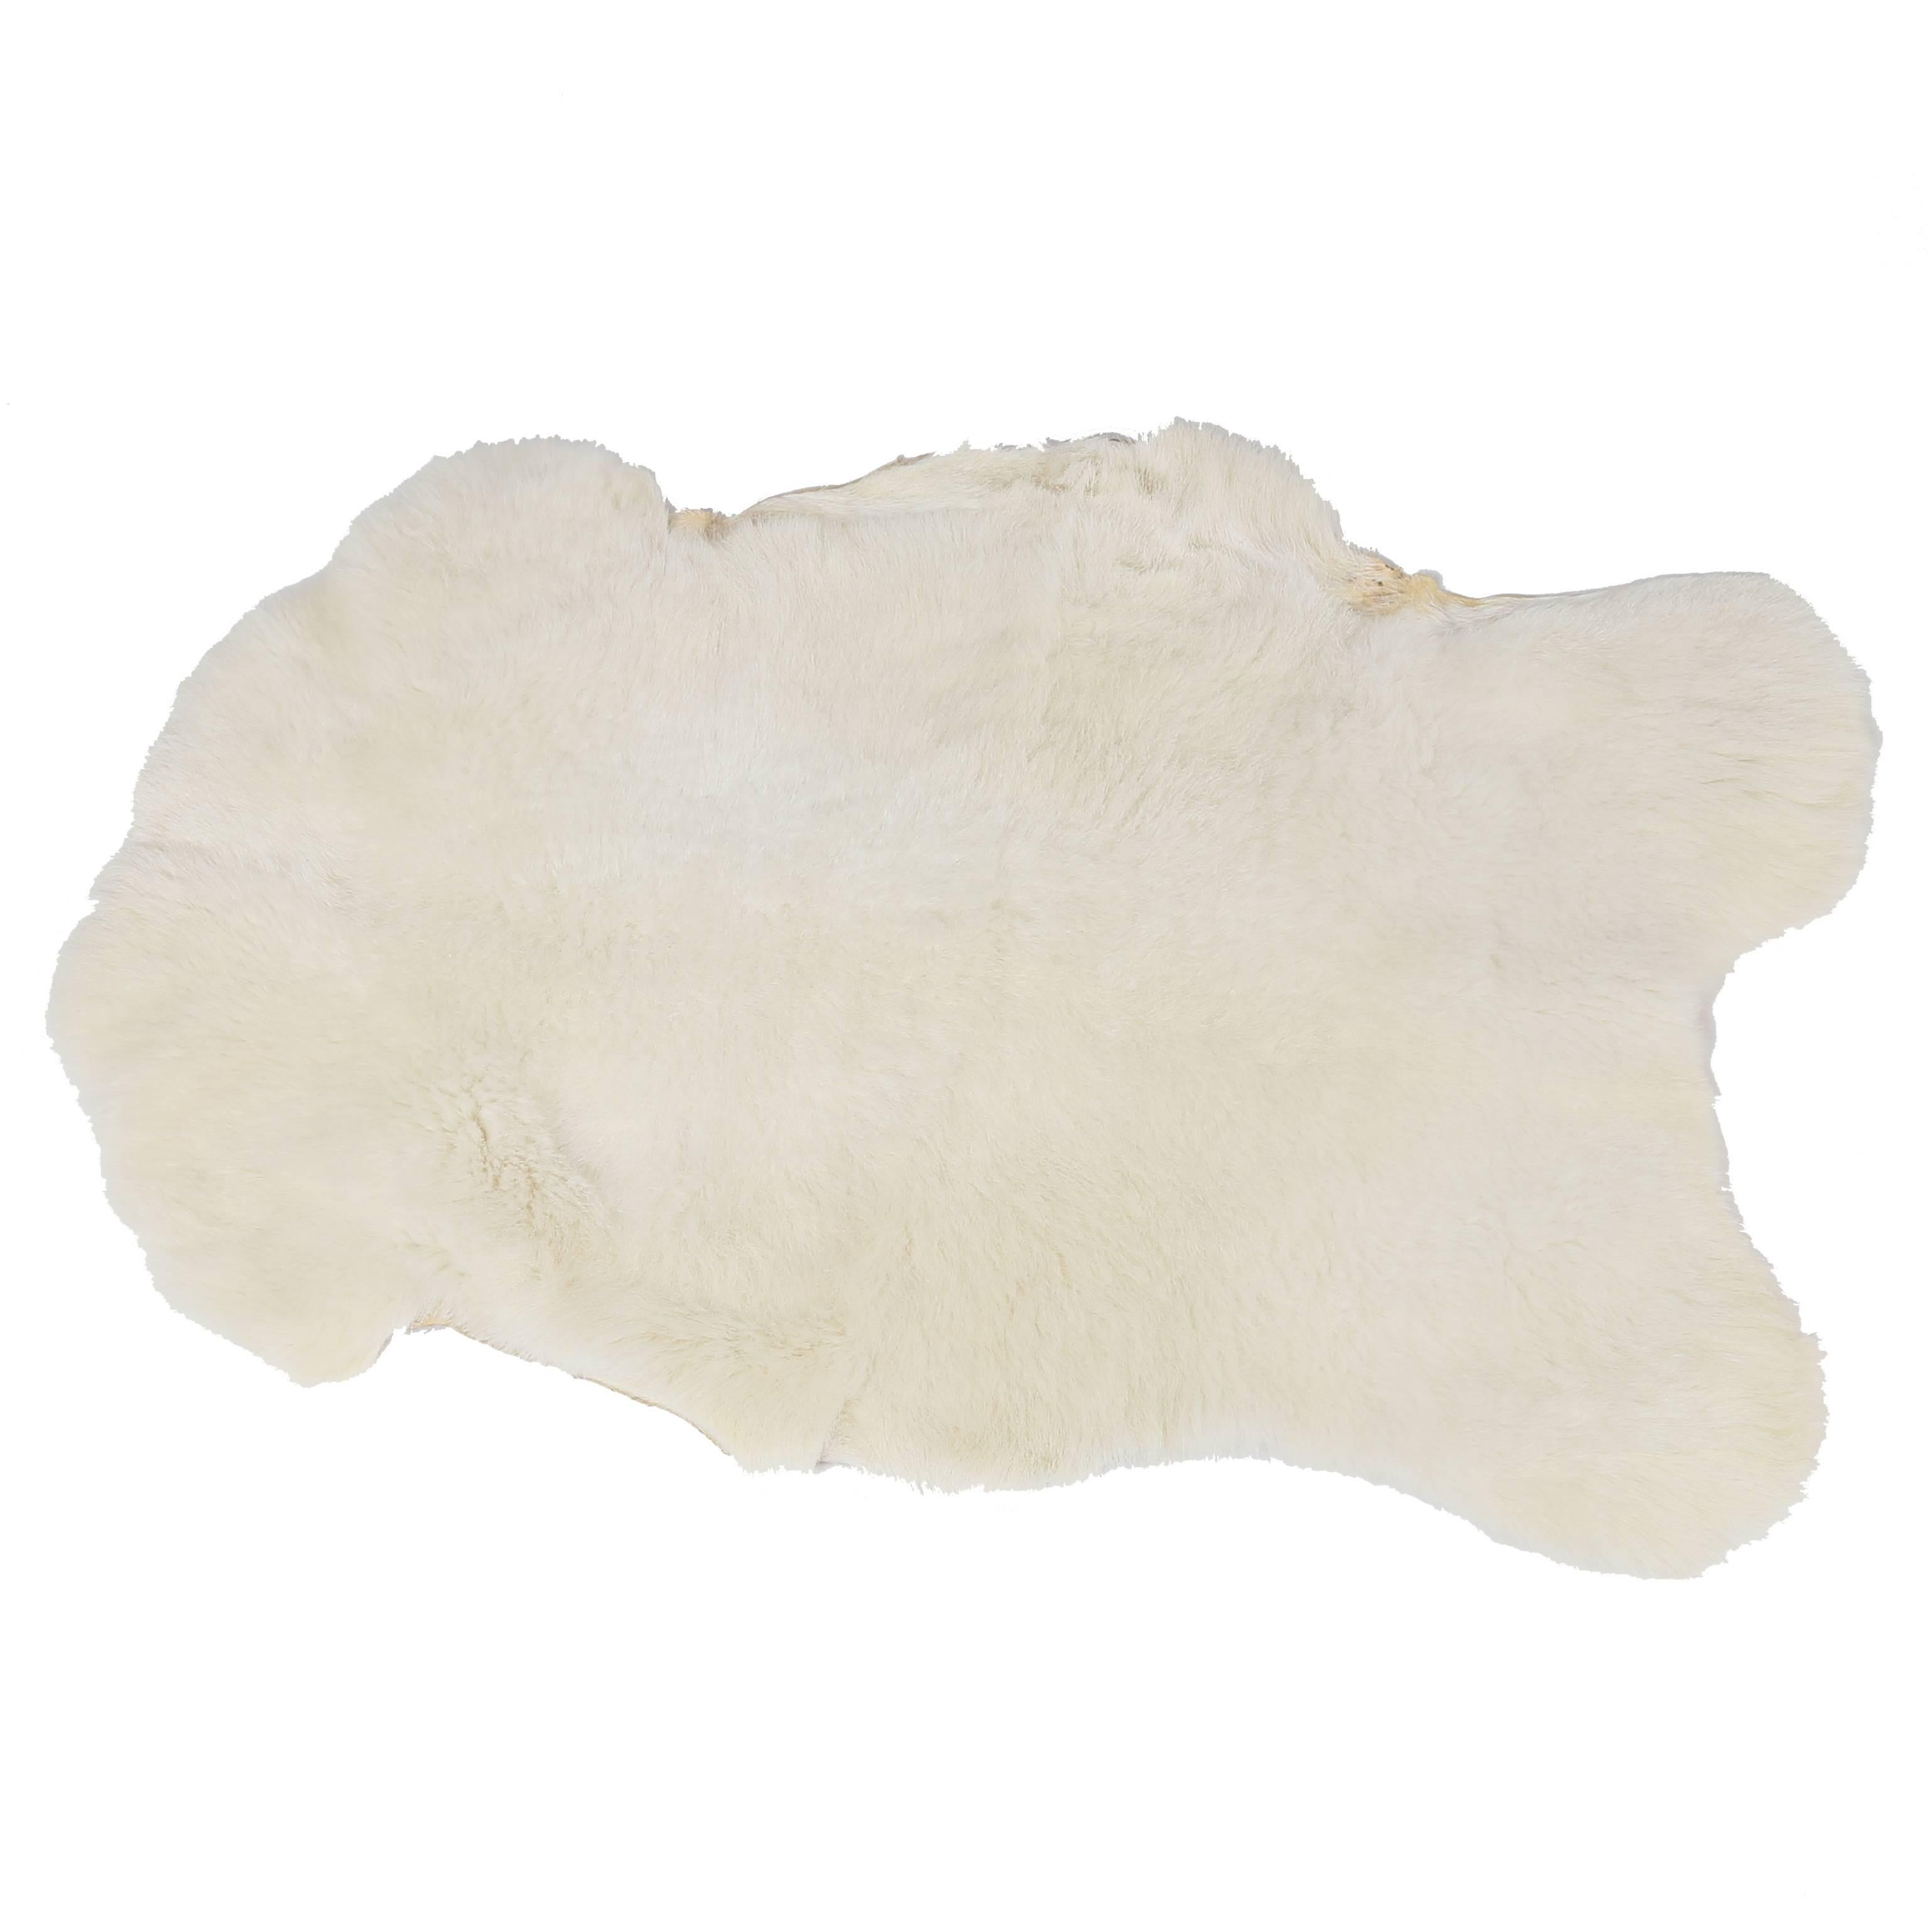 White Katahdin Hair Sheep Throw or Rug